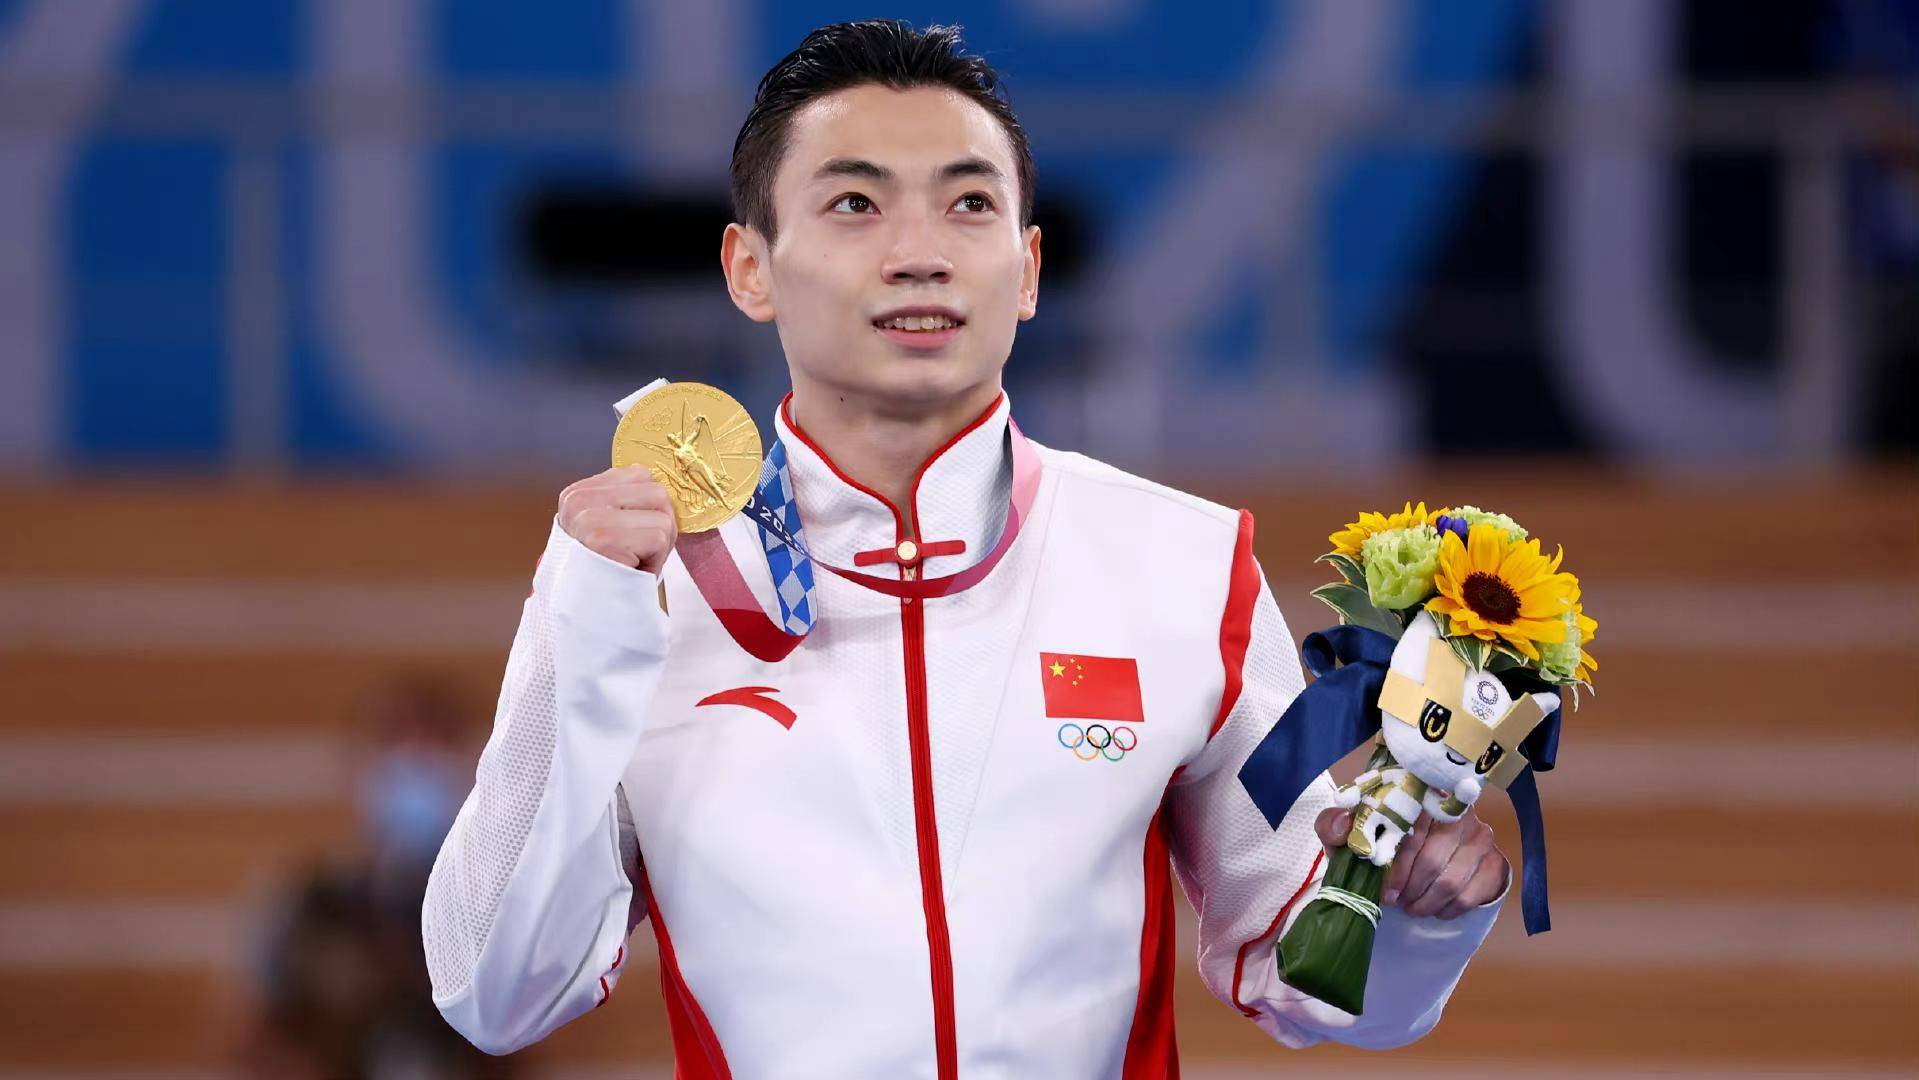 8月3日,在东京奥运会男子双杠决赛中,中国选手邹敬园以绝对优势,成功